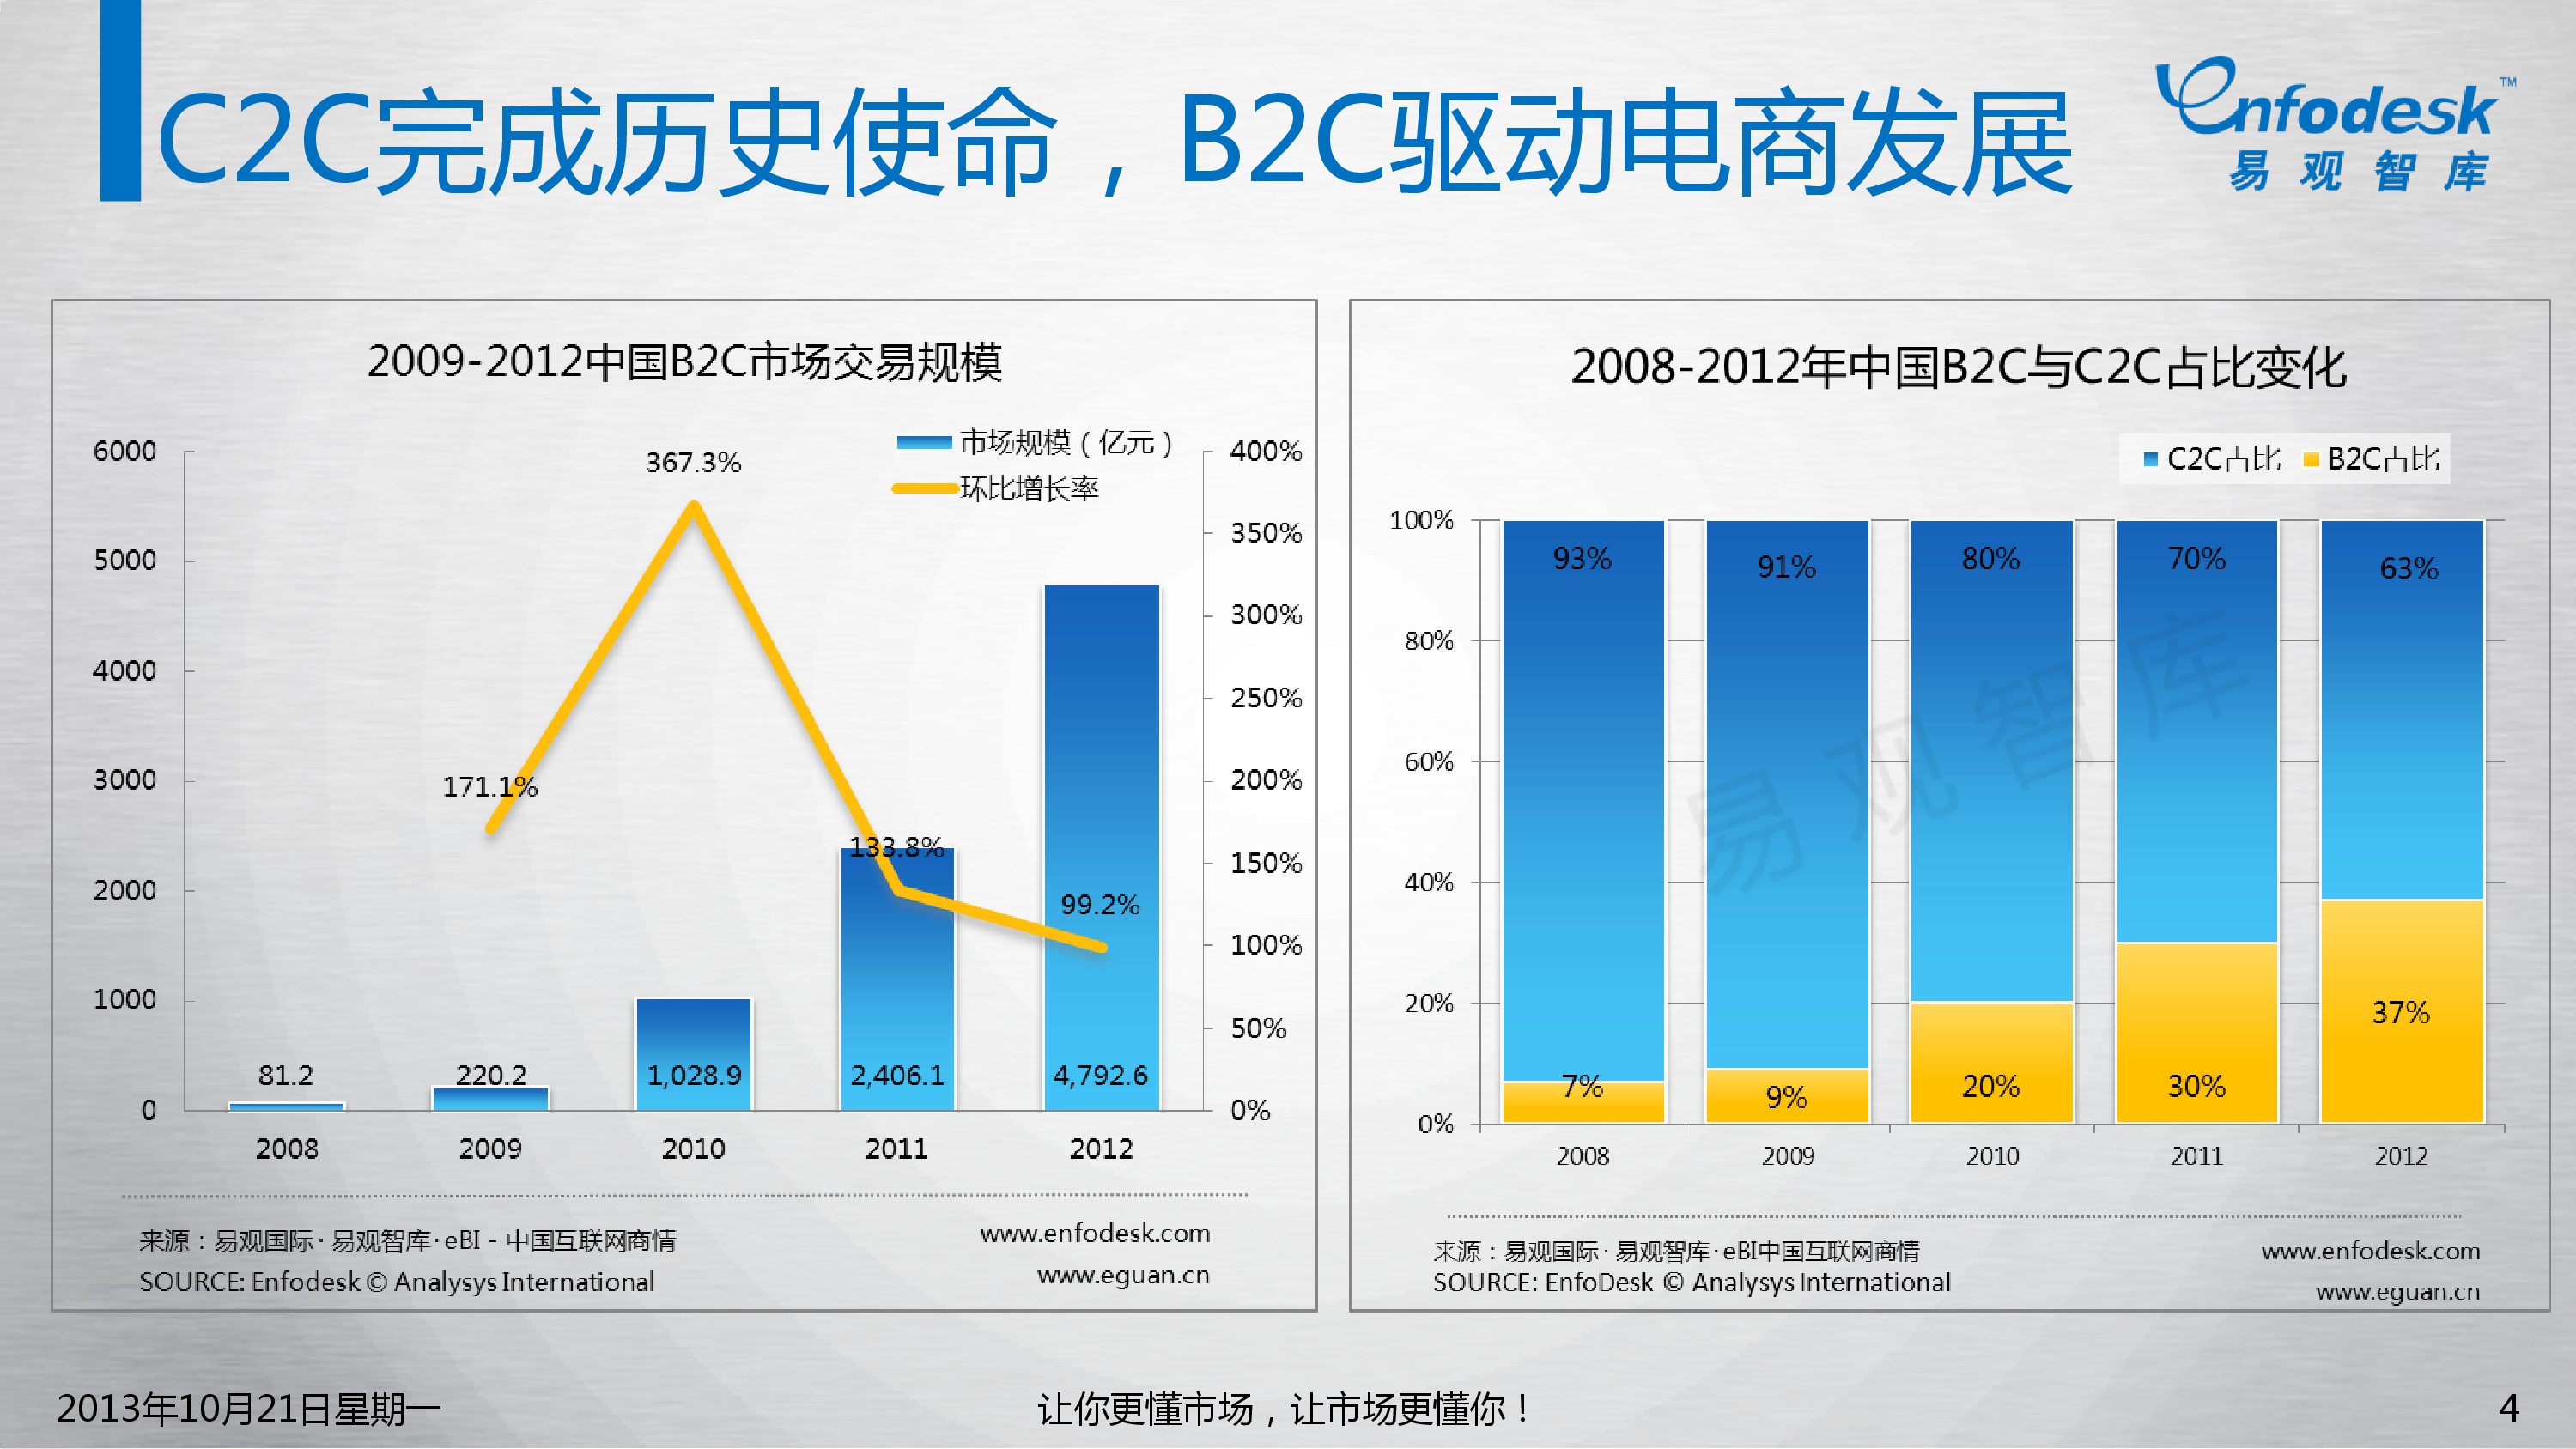 2022 中国跨境电商创业生态图谱（1-跨境服务商）(跨境电商竞争力)-羽毛出海